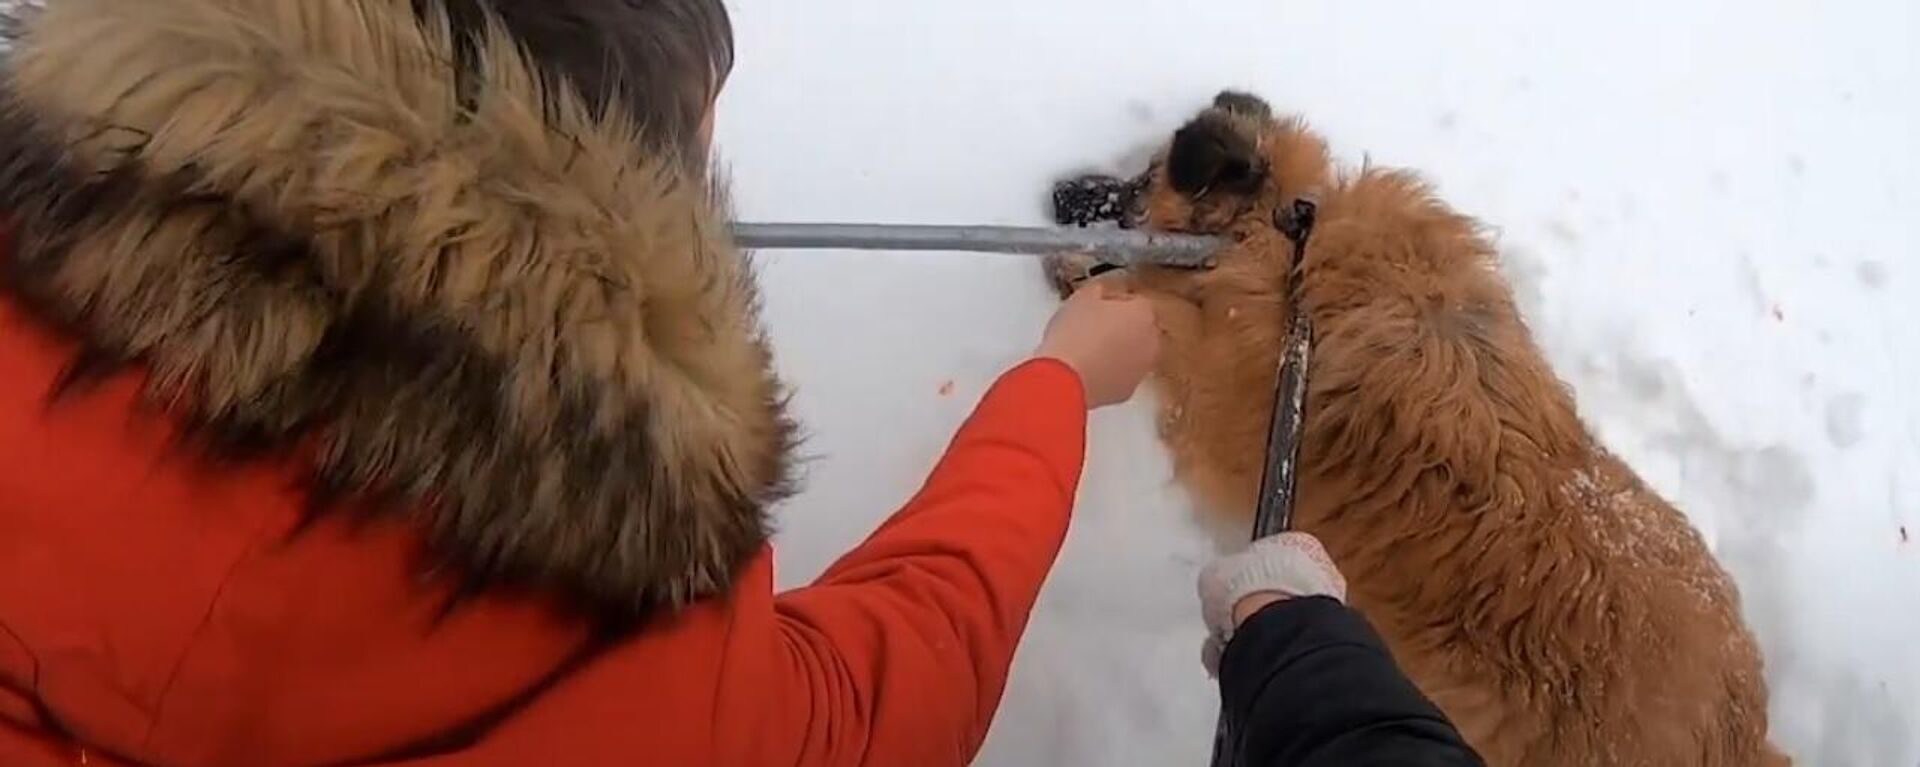 Люди спасли бездомную собаку со стрелой в шее - Sputnik Узбекистан, 1920, 25.03.2021